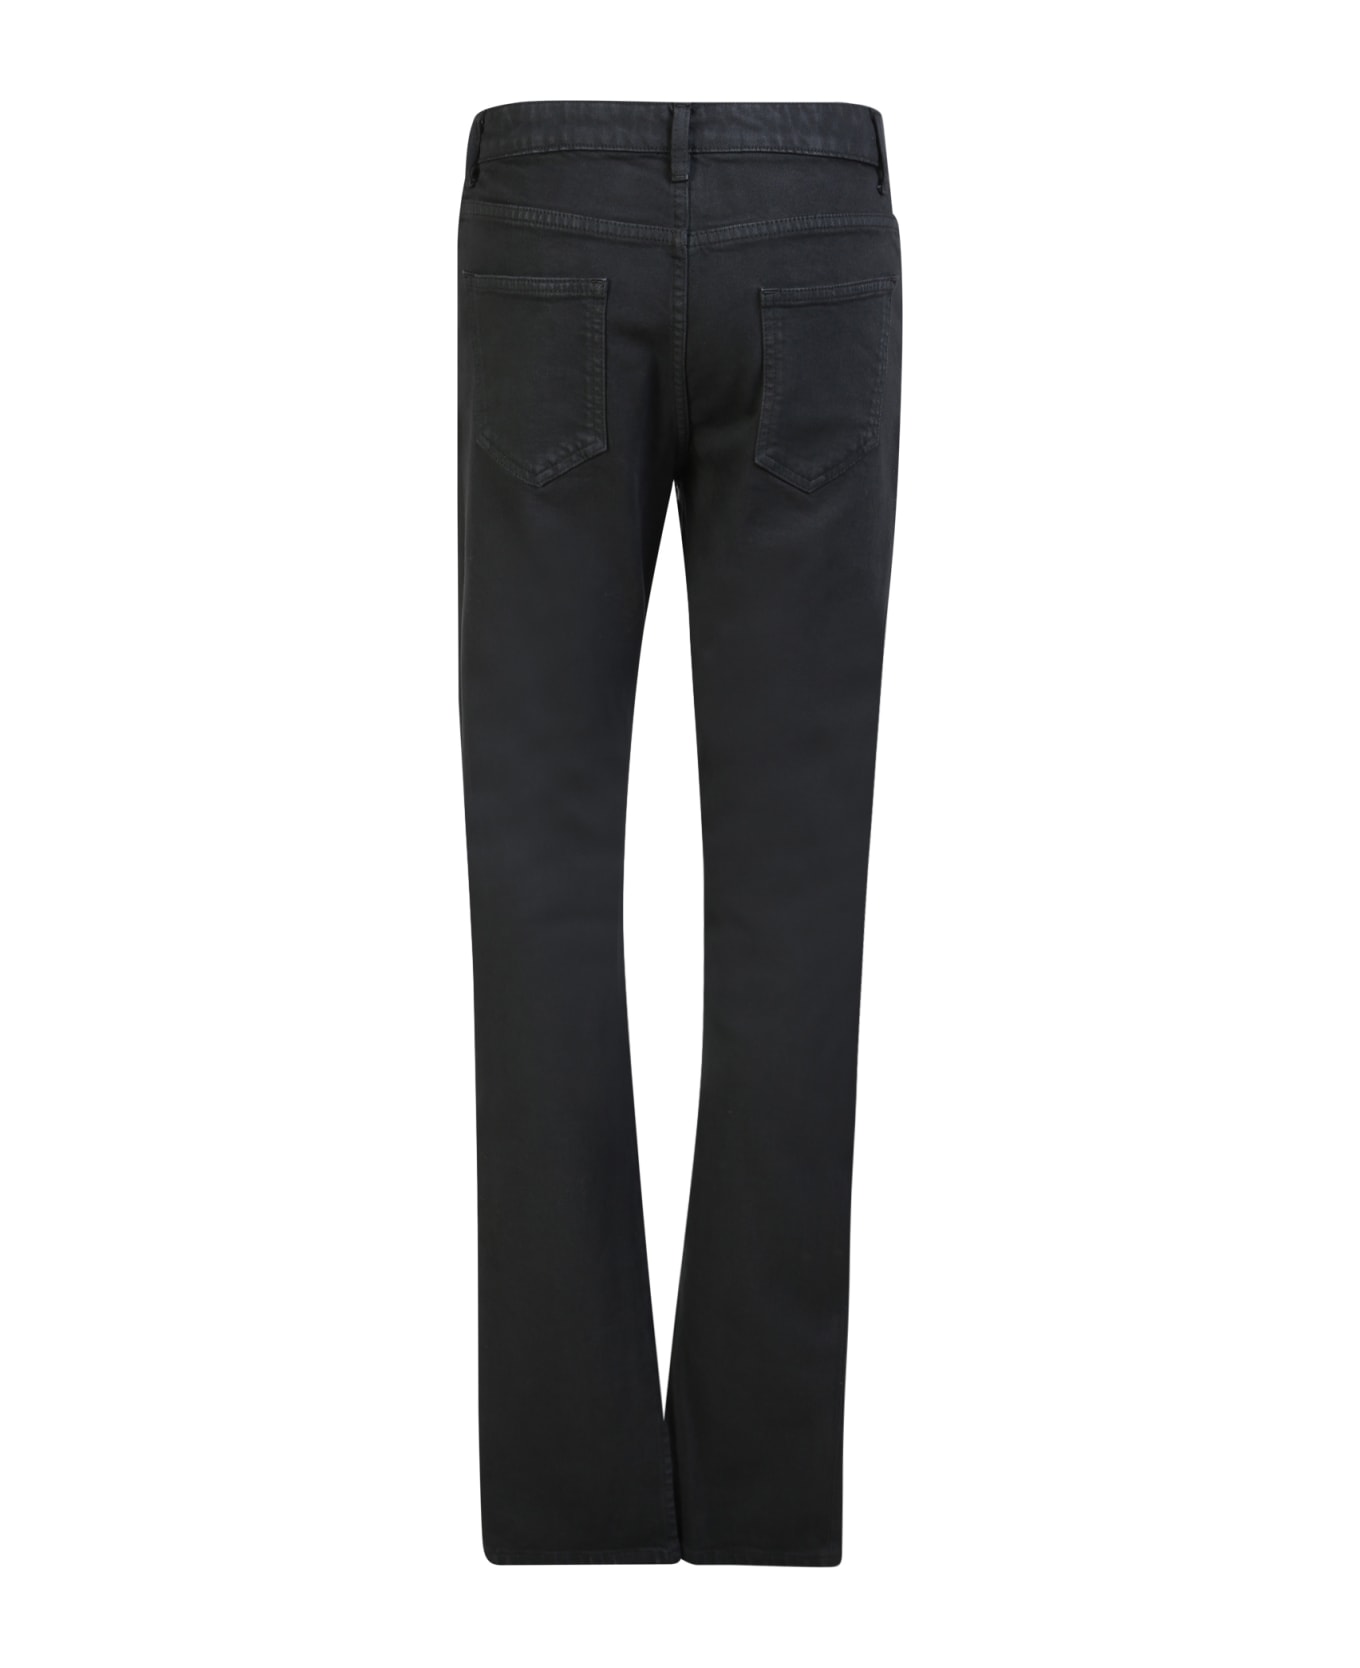 1017 ALYX 9SM High-waisted Skinny Jeans Black - Black